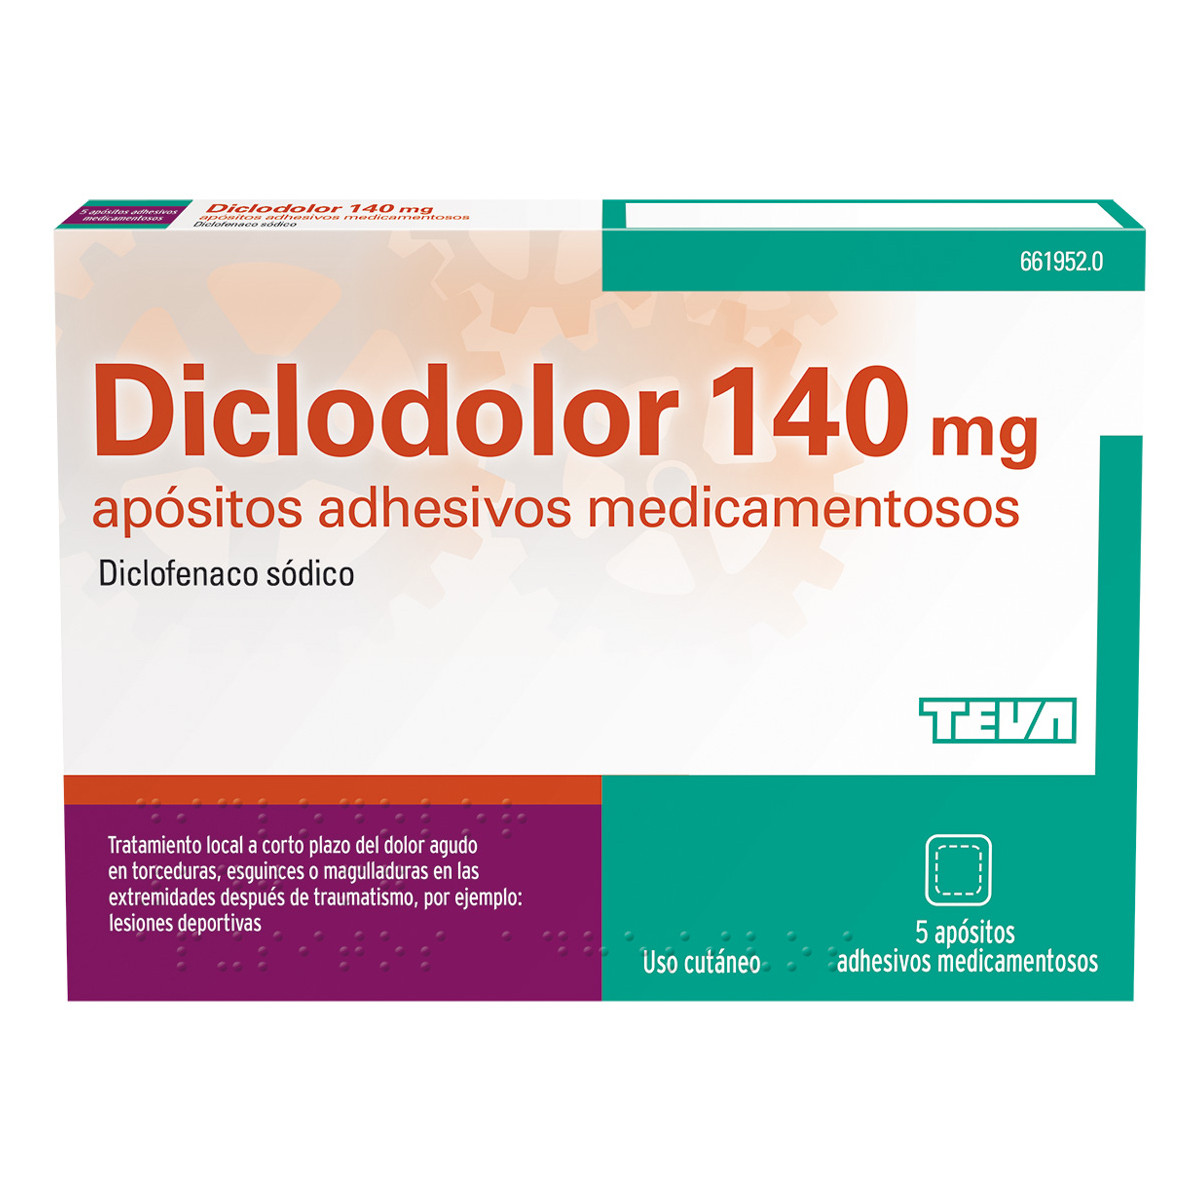 Imagen de Diclodolor 140 mg 5 apósitos